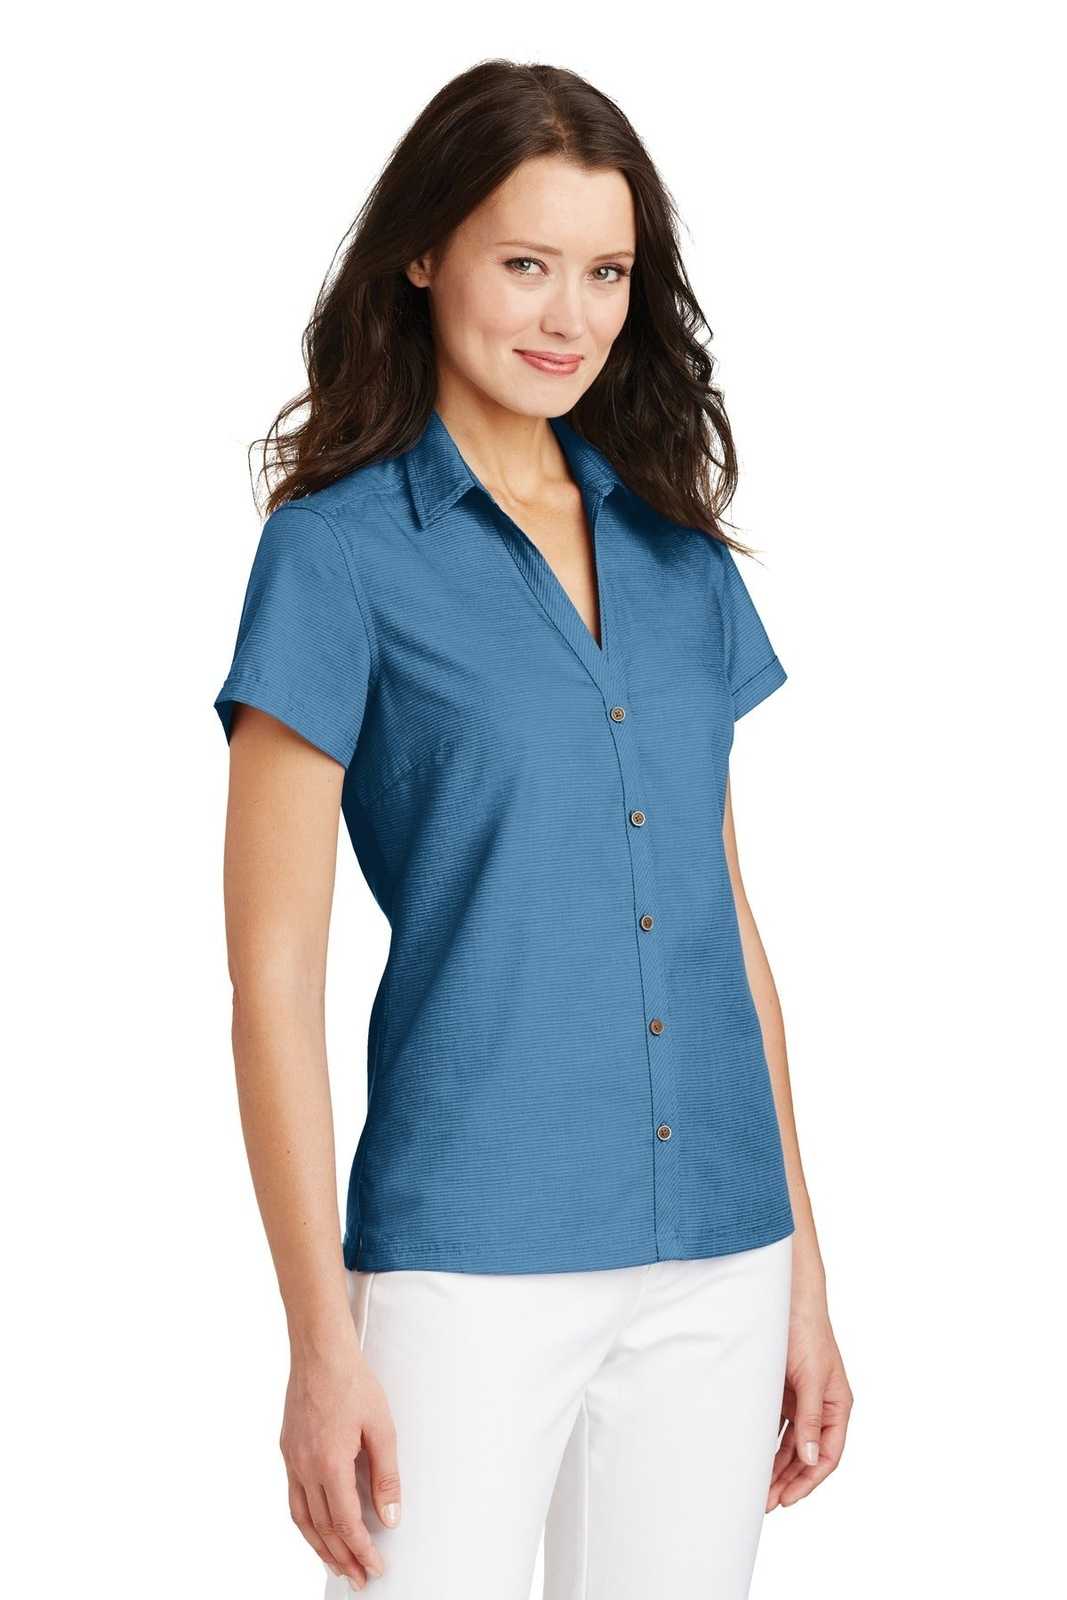 Port Authority L662 Ladies Textured Camp Shirt - Celadon - HIT a Double - 4